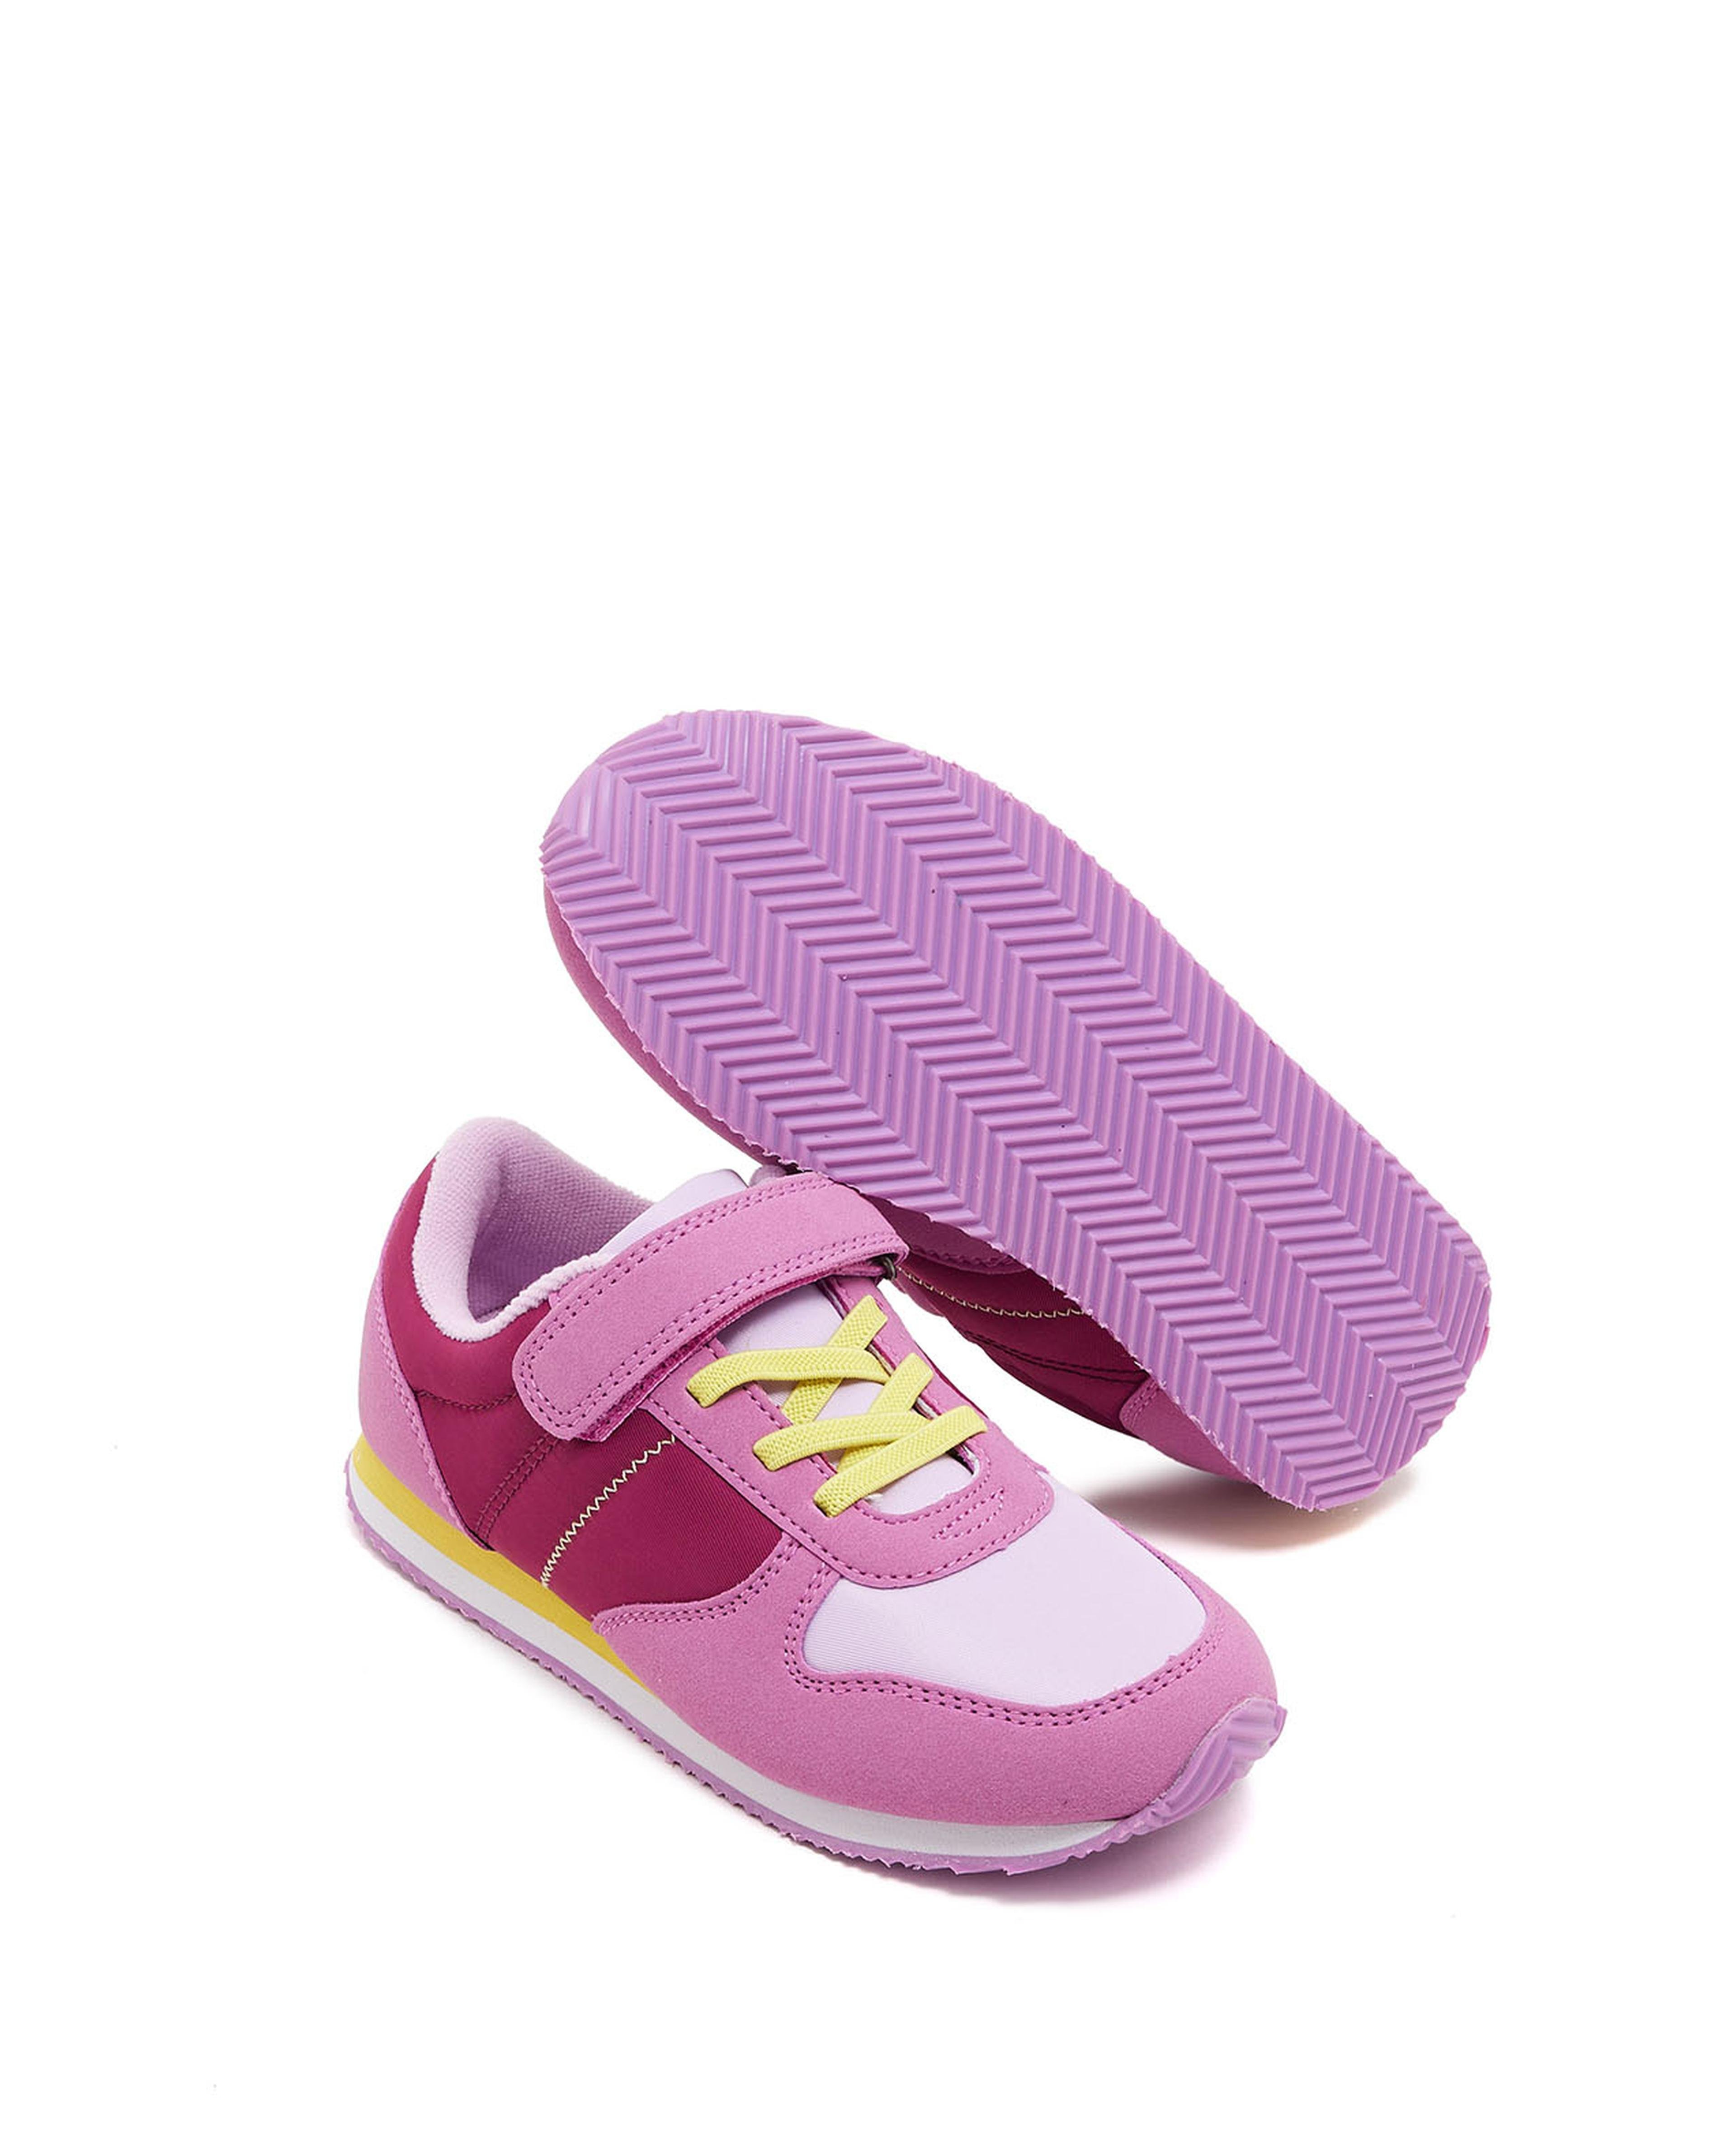 حذاء رياضي فليكرو بألوان متناسقة